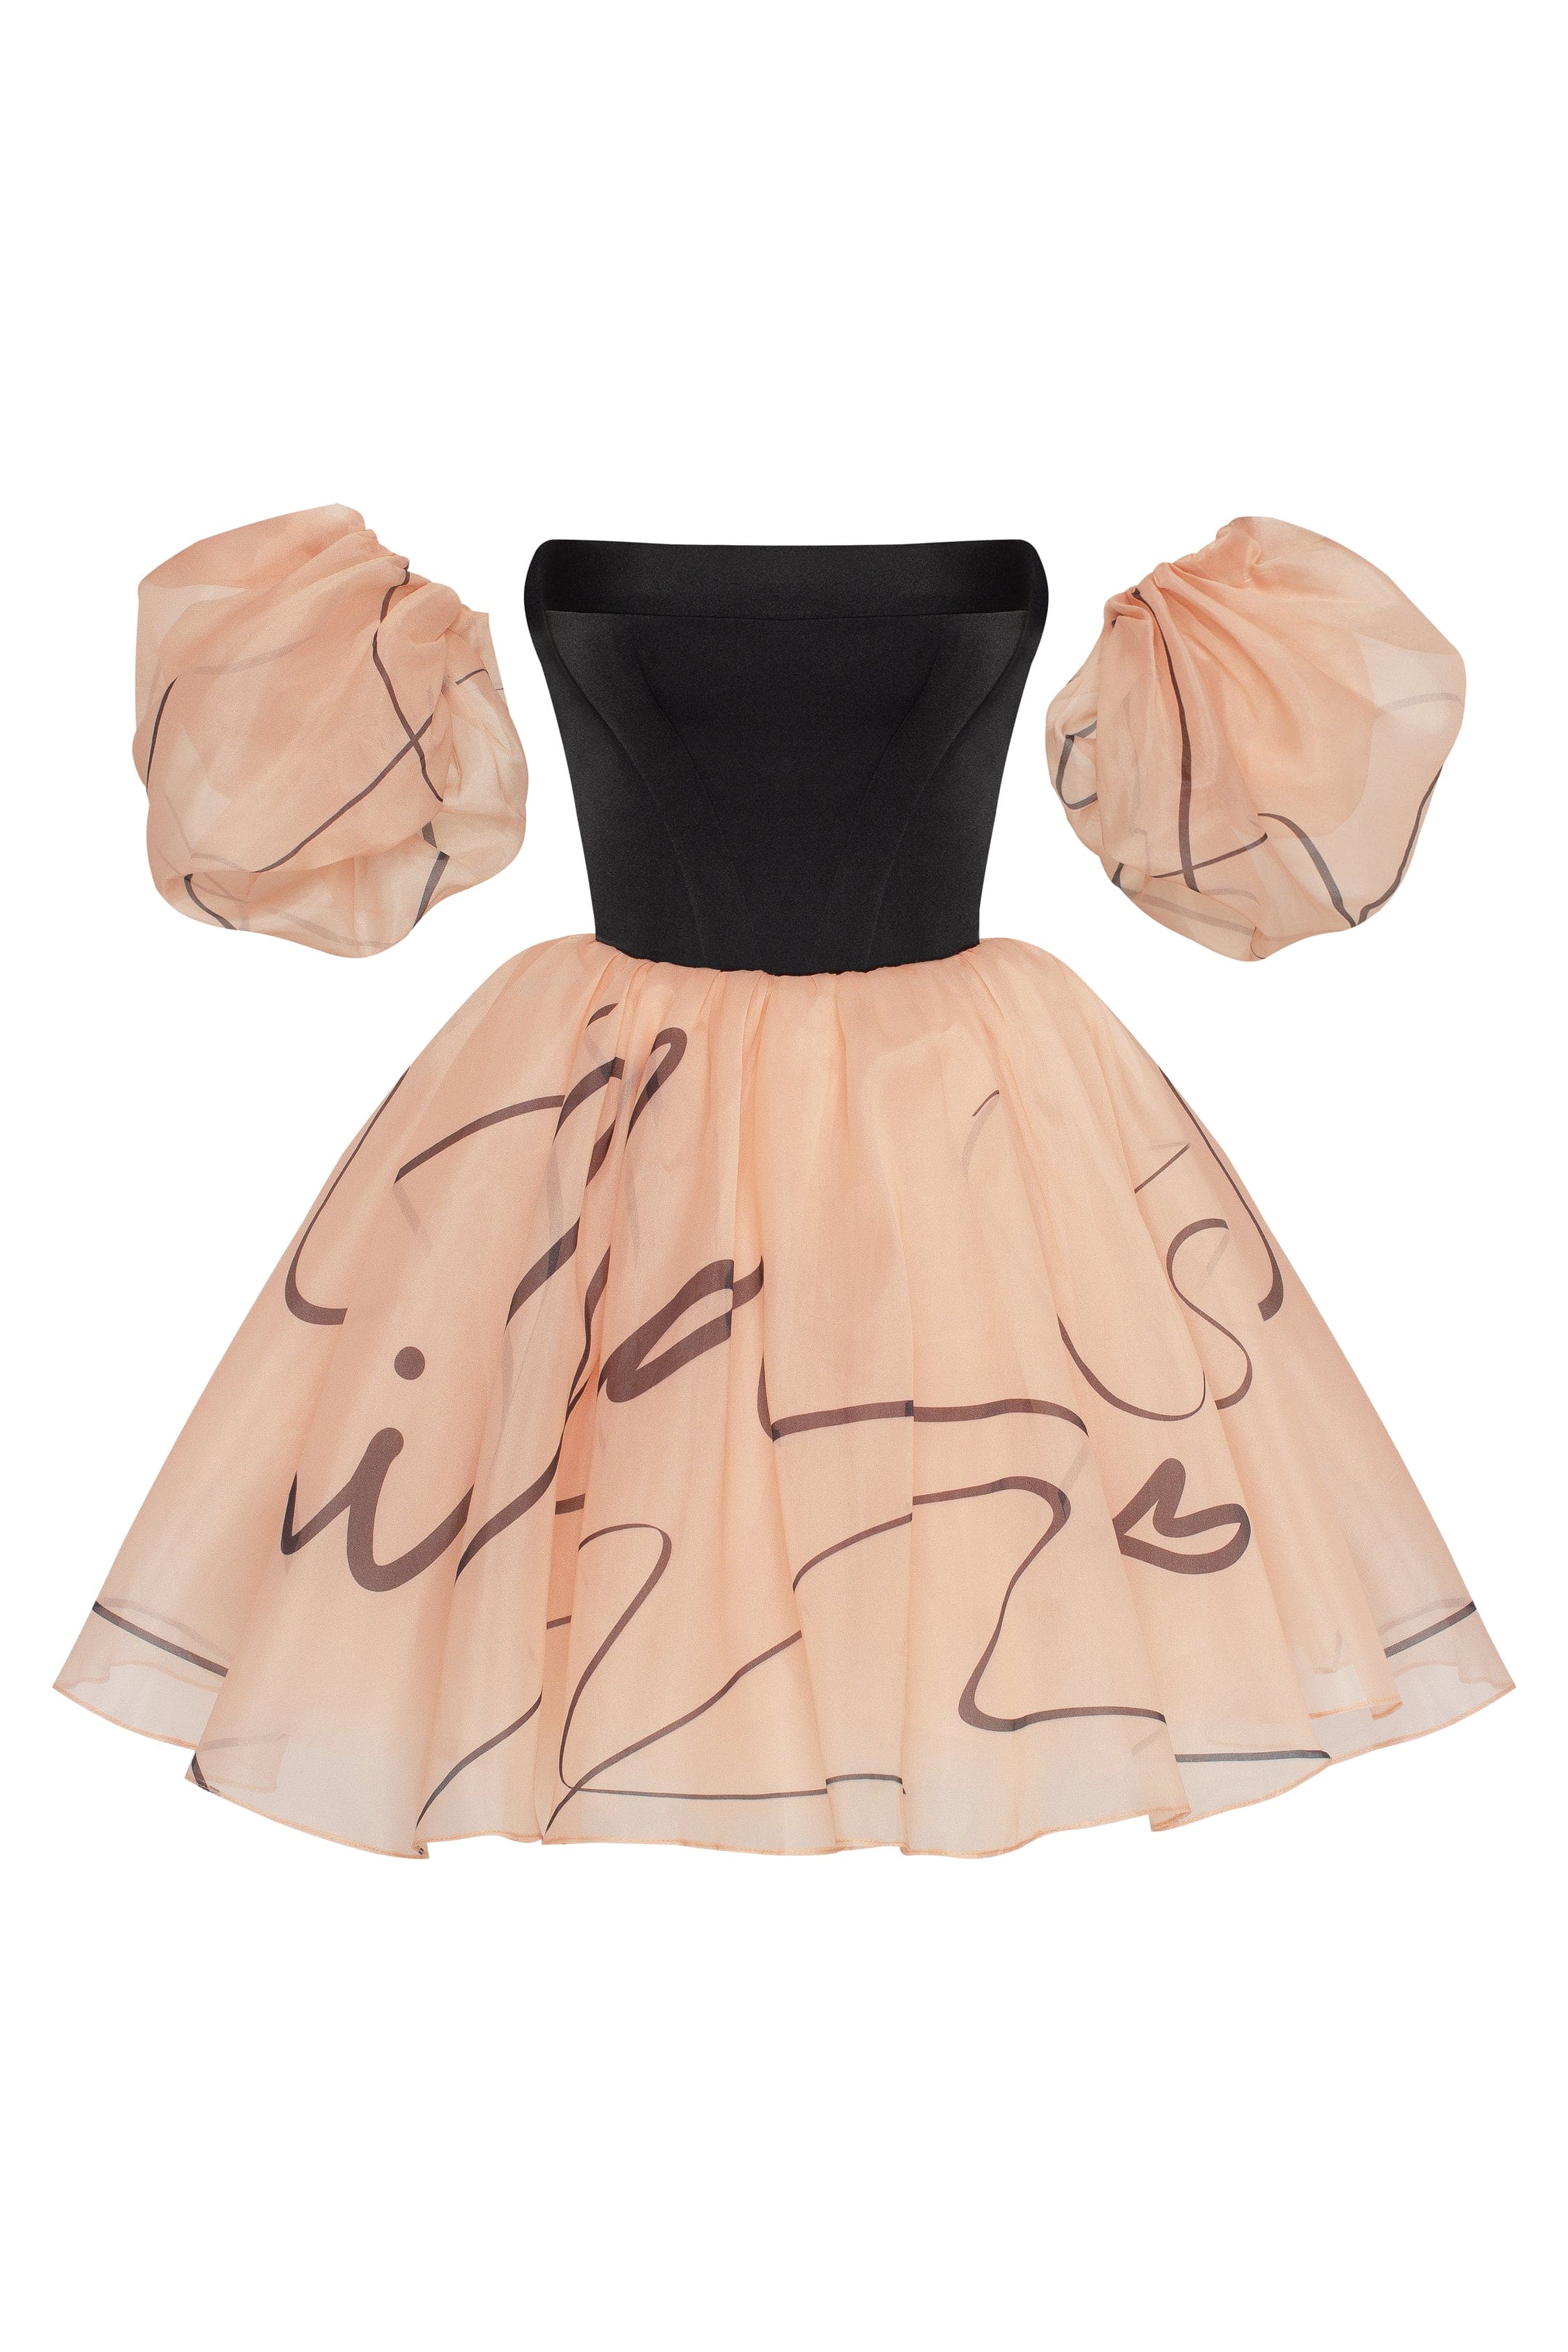 Puffy mini dress with Milla's signature, Xo Xo XXS womens